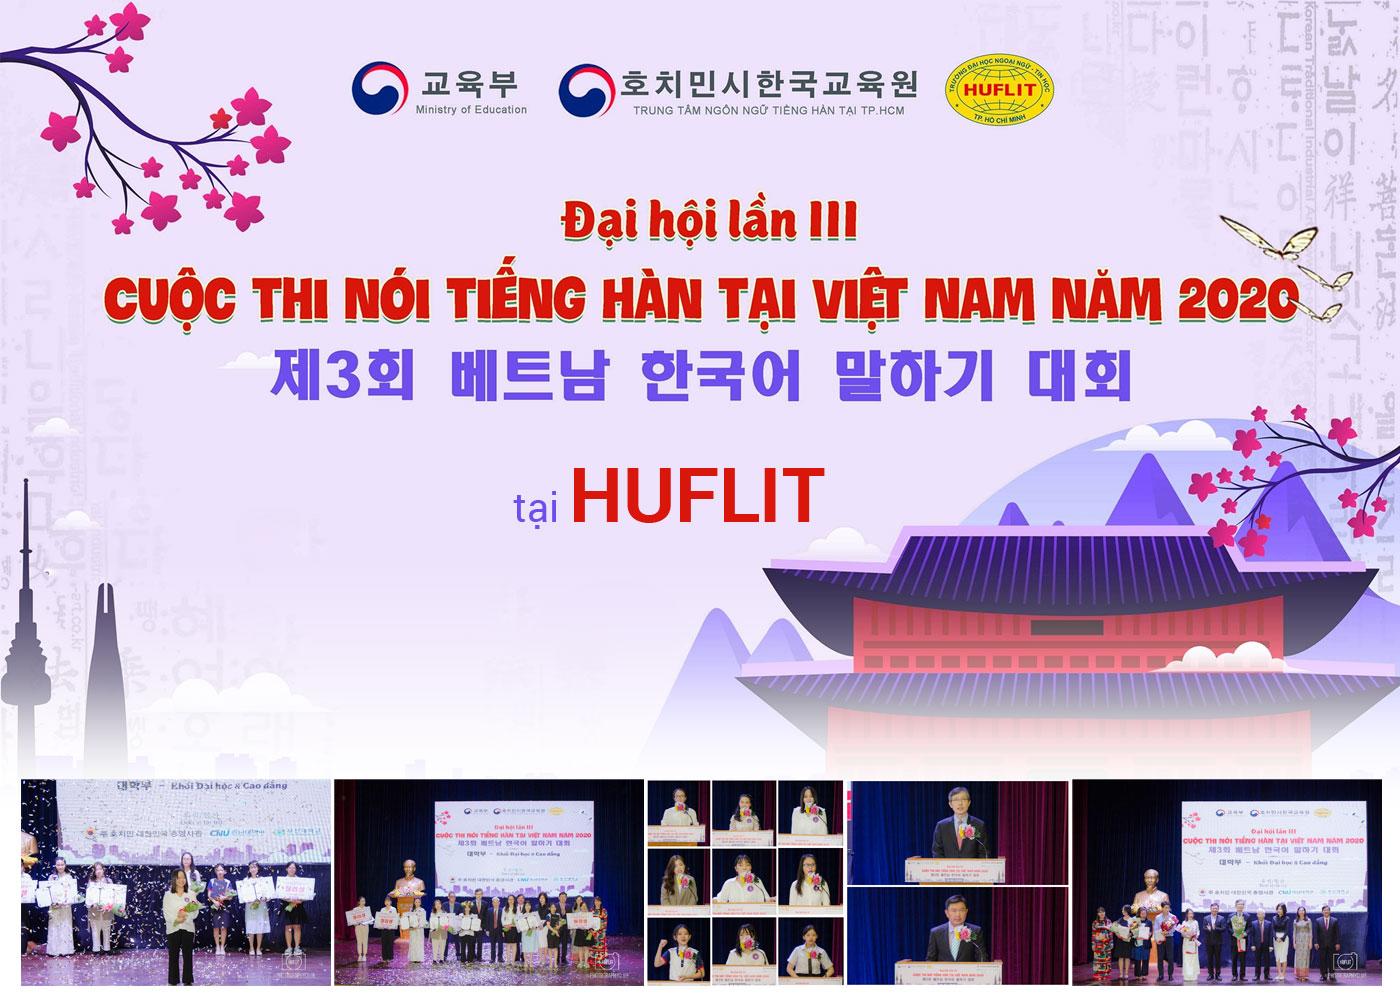 Đại hội lần III cuộc thi nói tiếng Hàn năm 2020 tại HUFLIT - Ảnh 1